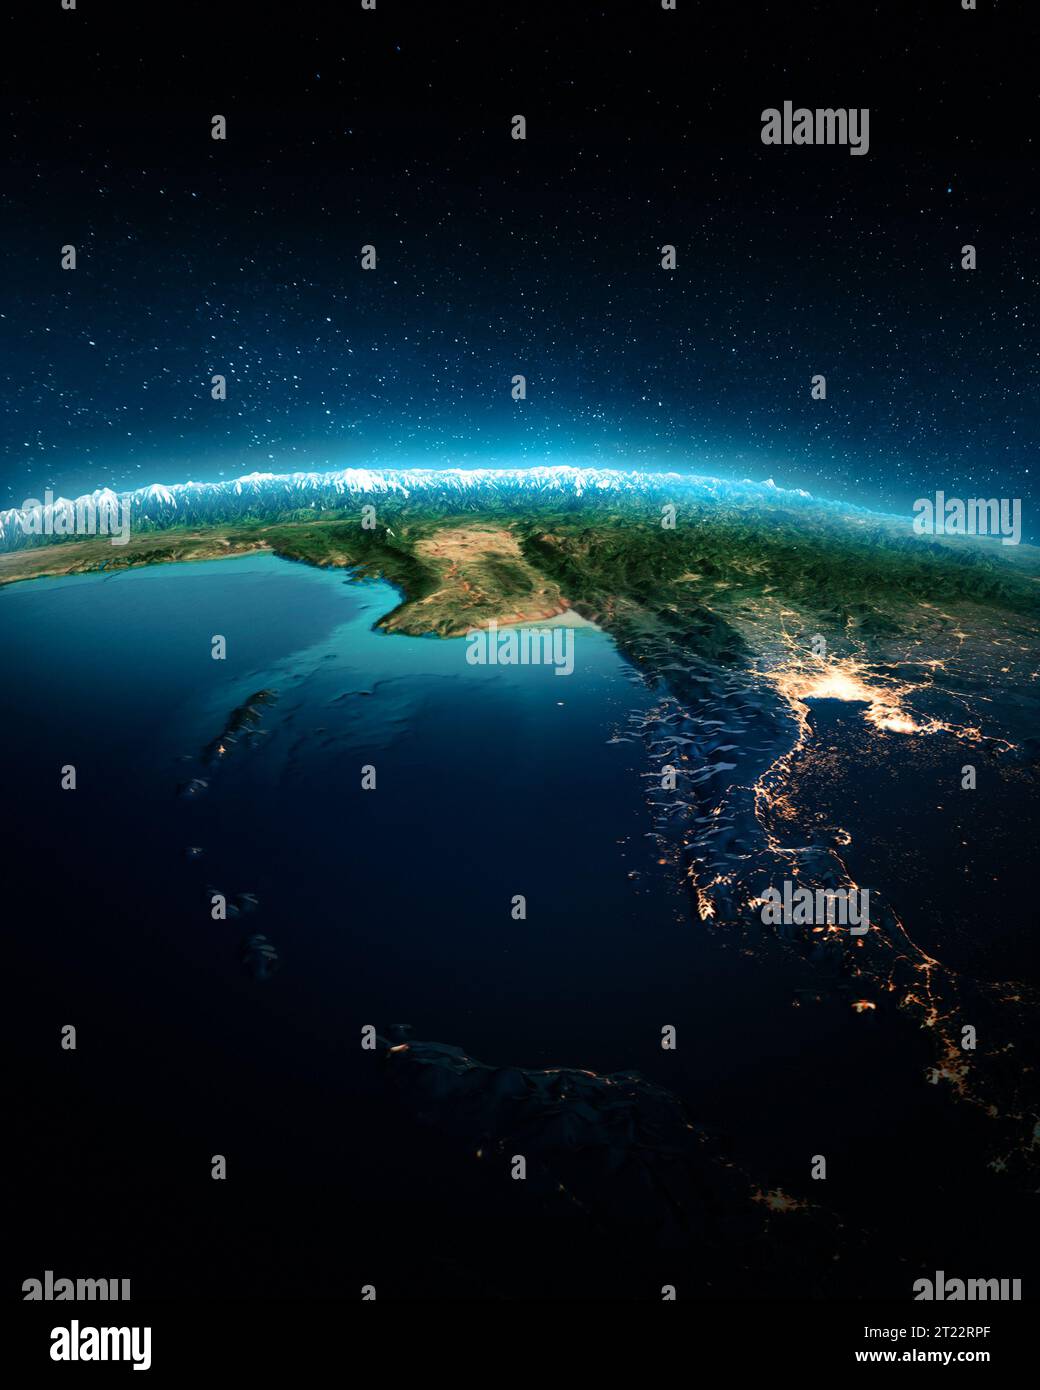 Asia sudorientale di notte. Elementi di questa immagine forniti dalla NASA. rendering 3d Foto Stock